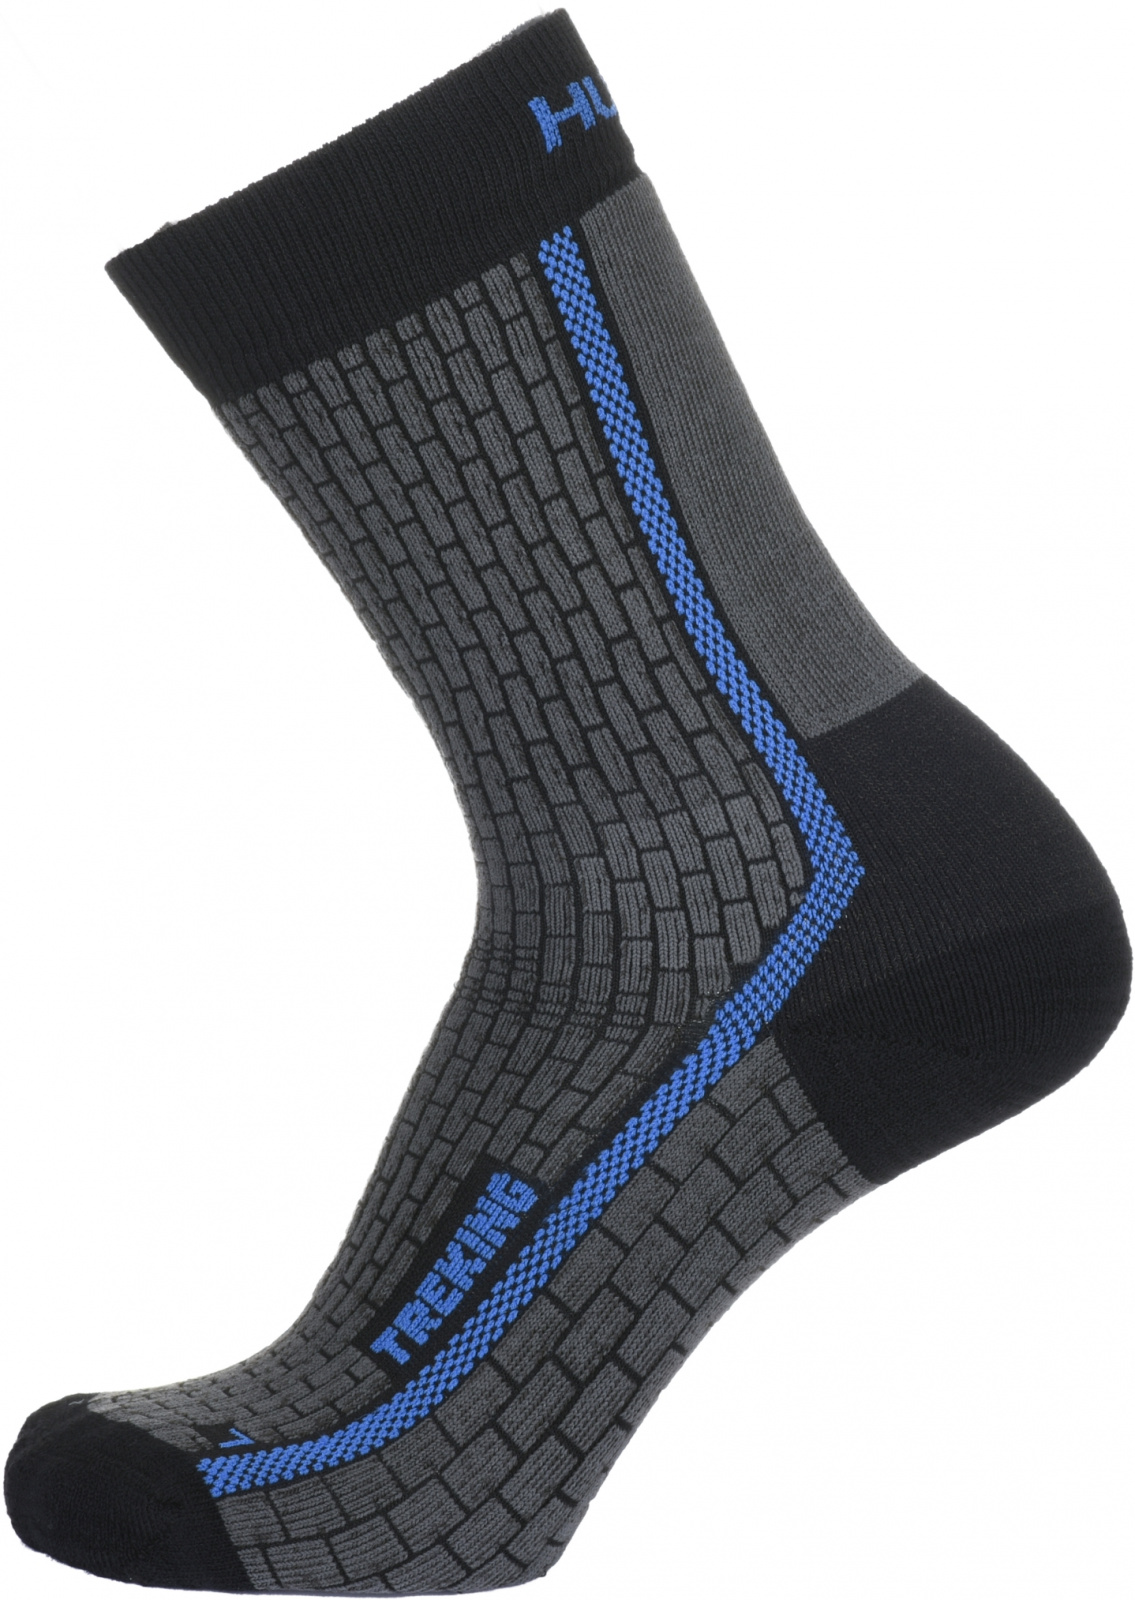 Husky Ponožky Treking antracit/modrá Velikost: M (36-40) ponožky